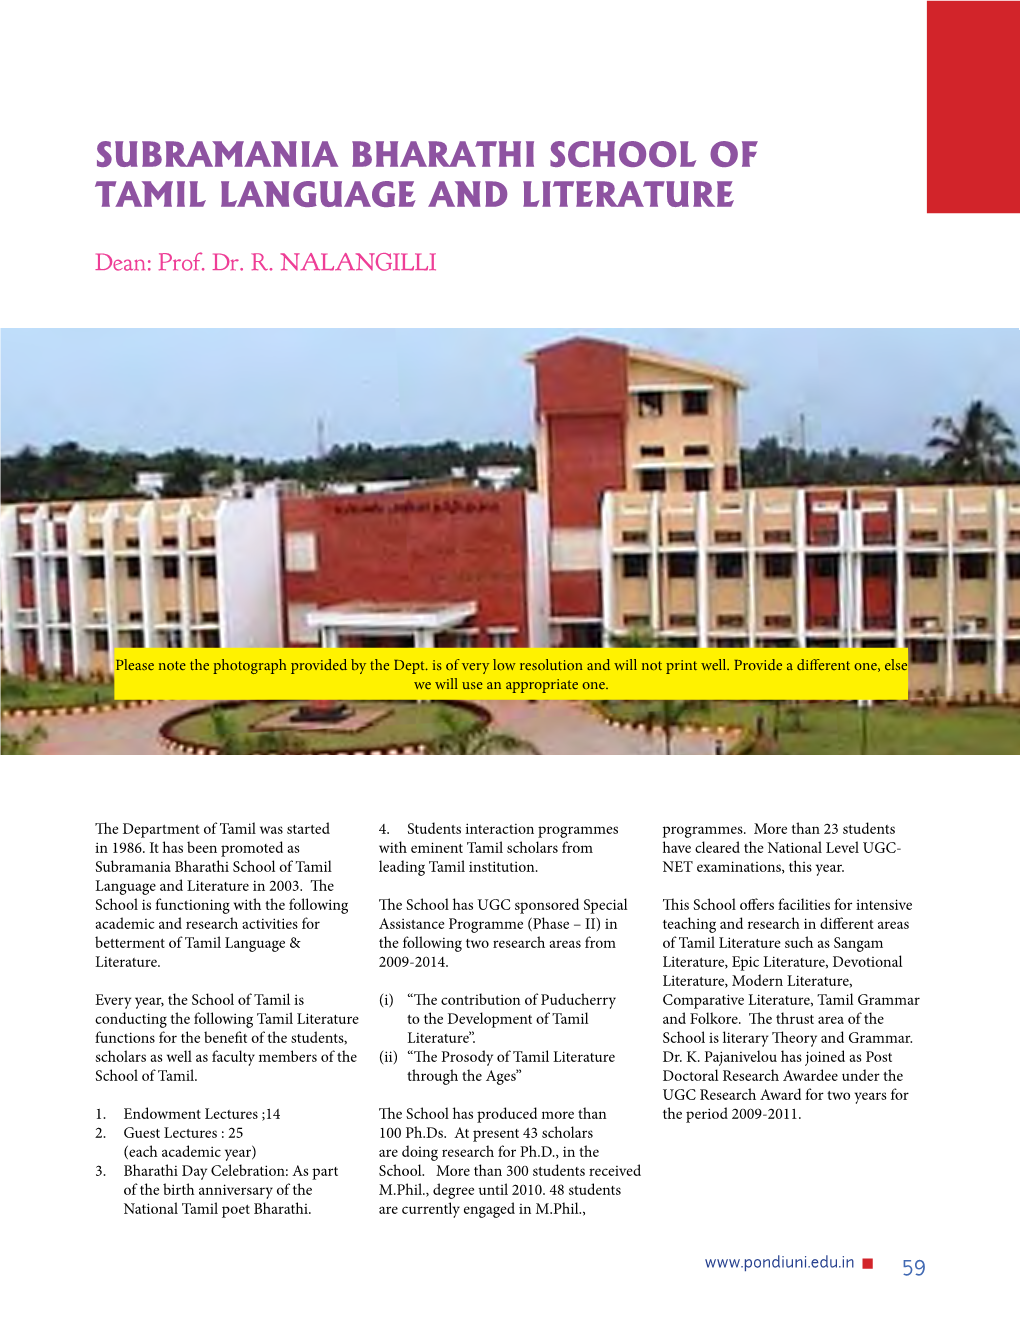 Subramania Bharathi School of Tamil Language and Literature